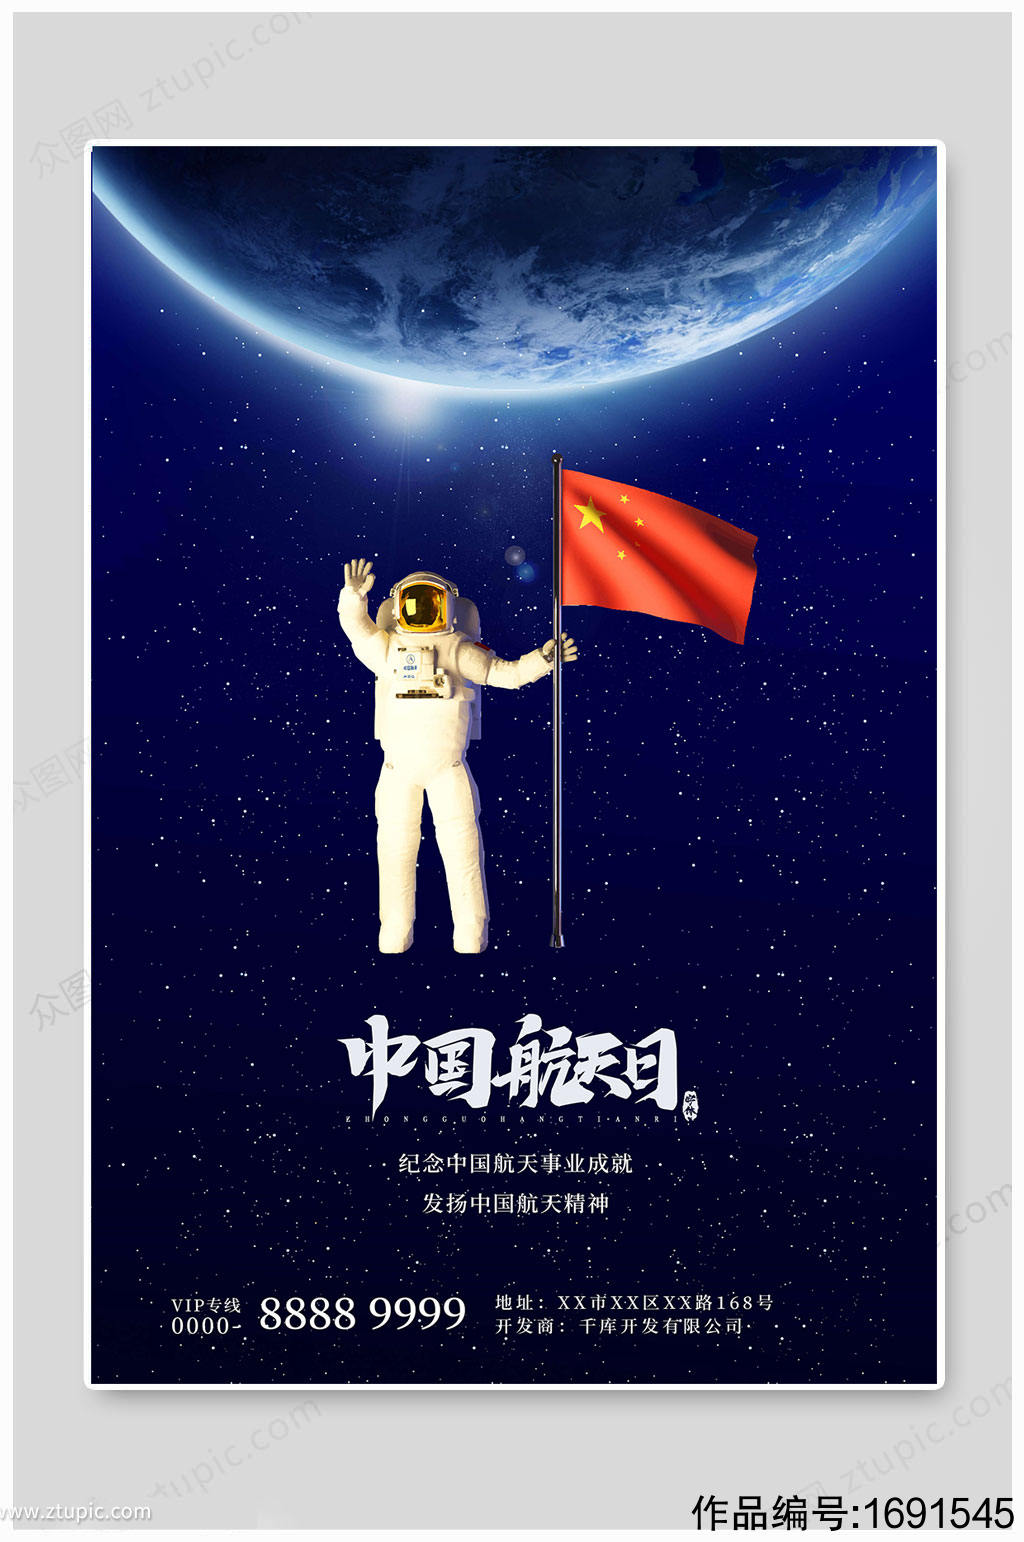 中国航天日精神海报